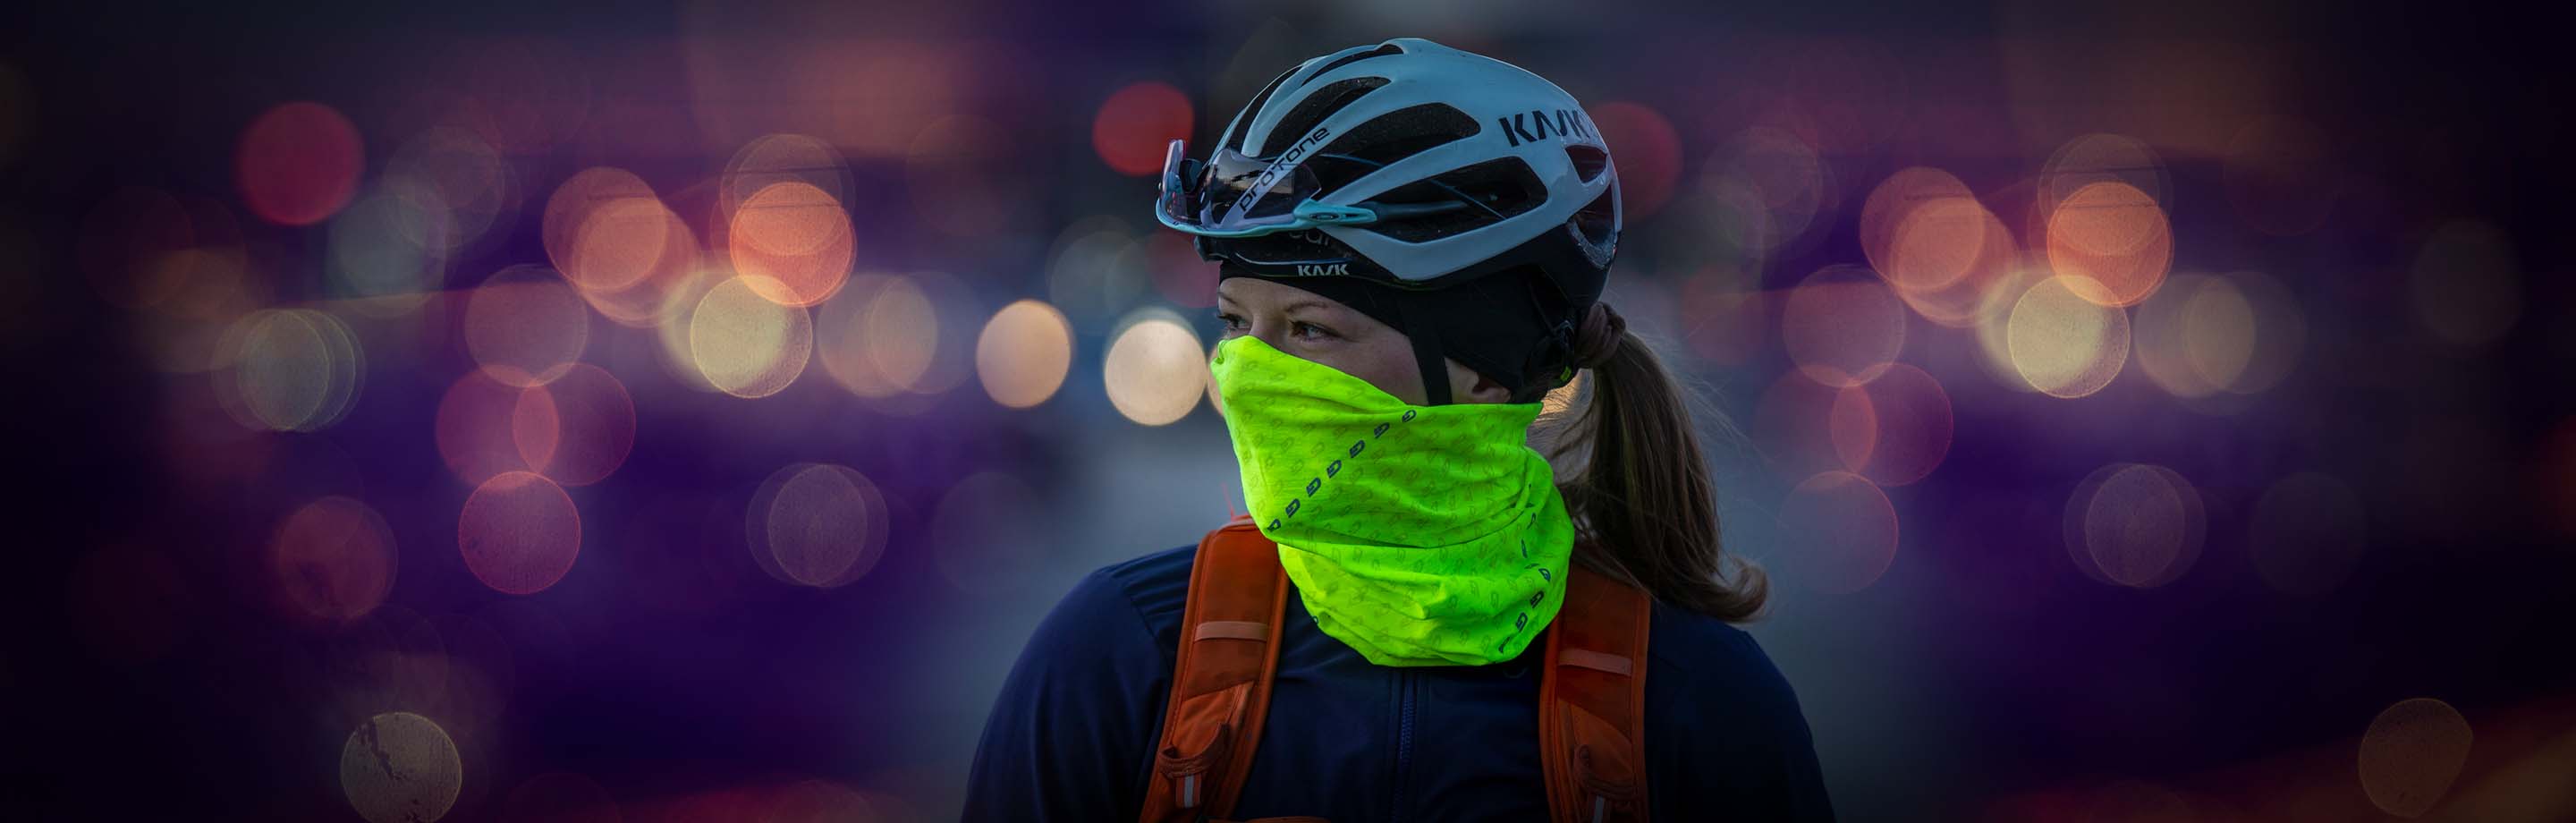 Hi-Vis - reflecterende fietskleding, verlichting & accessoires voor briljante zichtbaarheid en veiligheid.